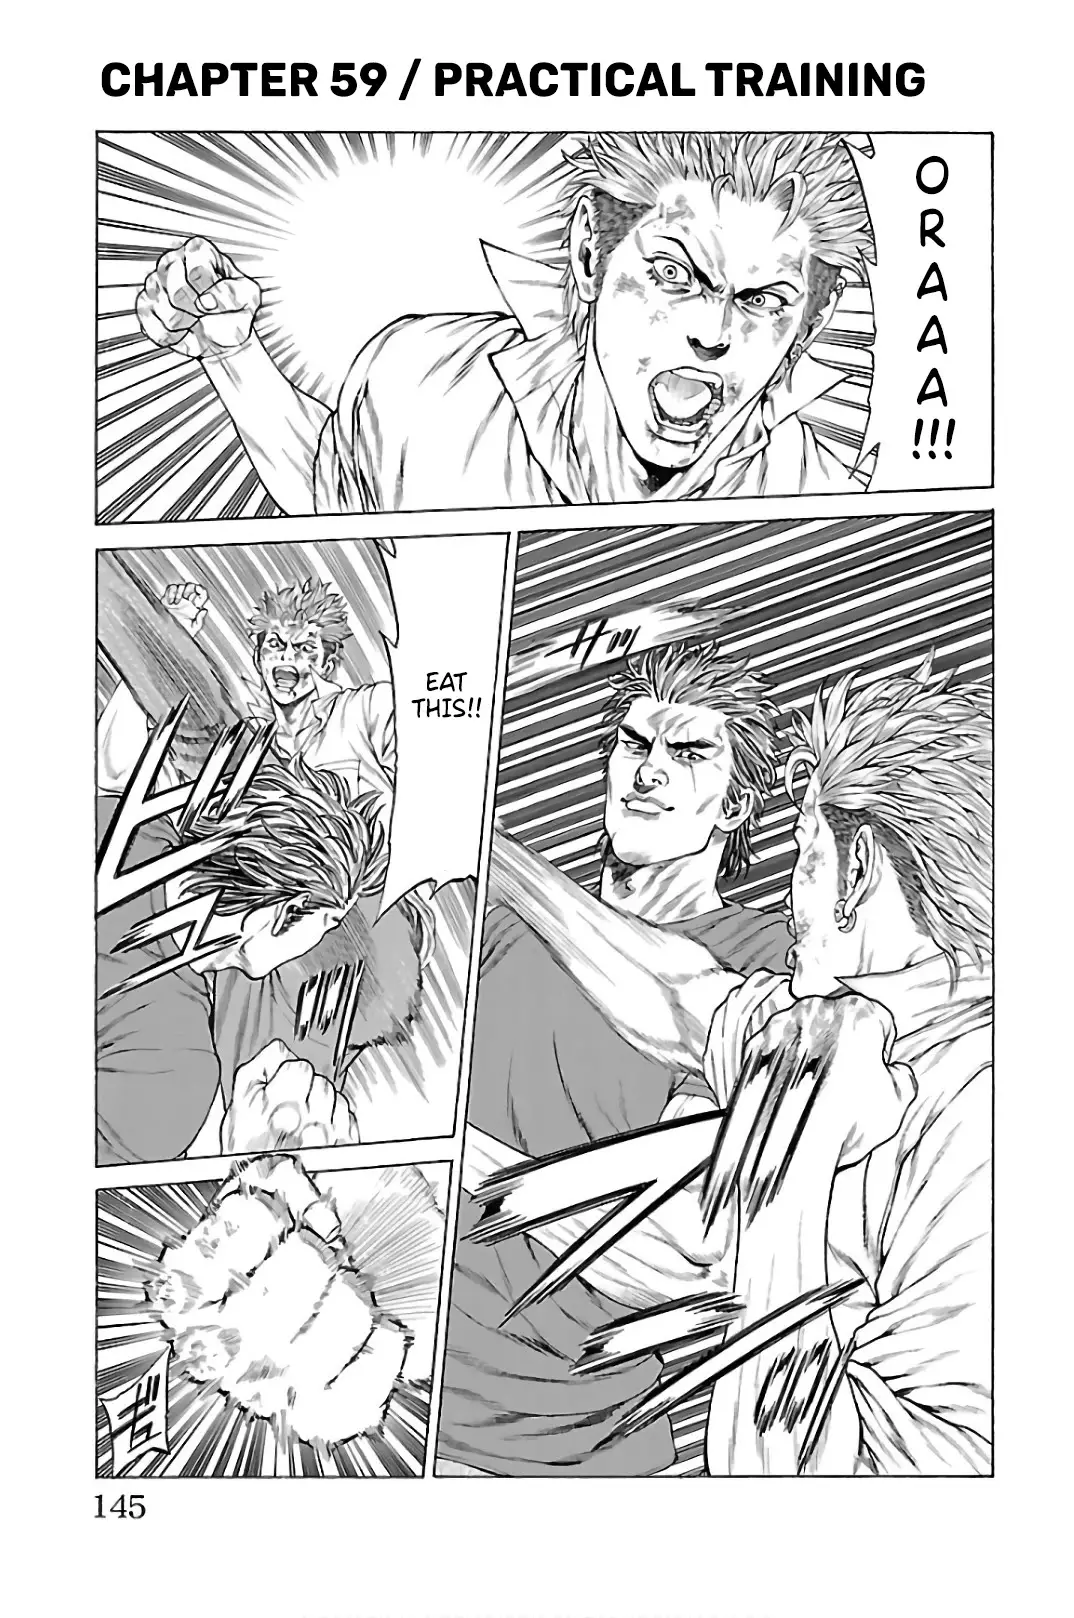 Shonan Seven - 59 page 1